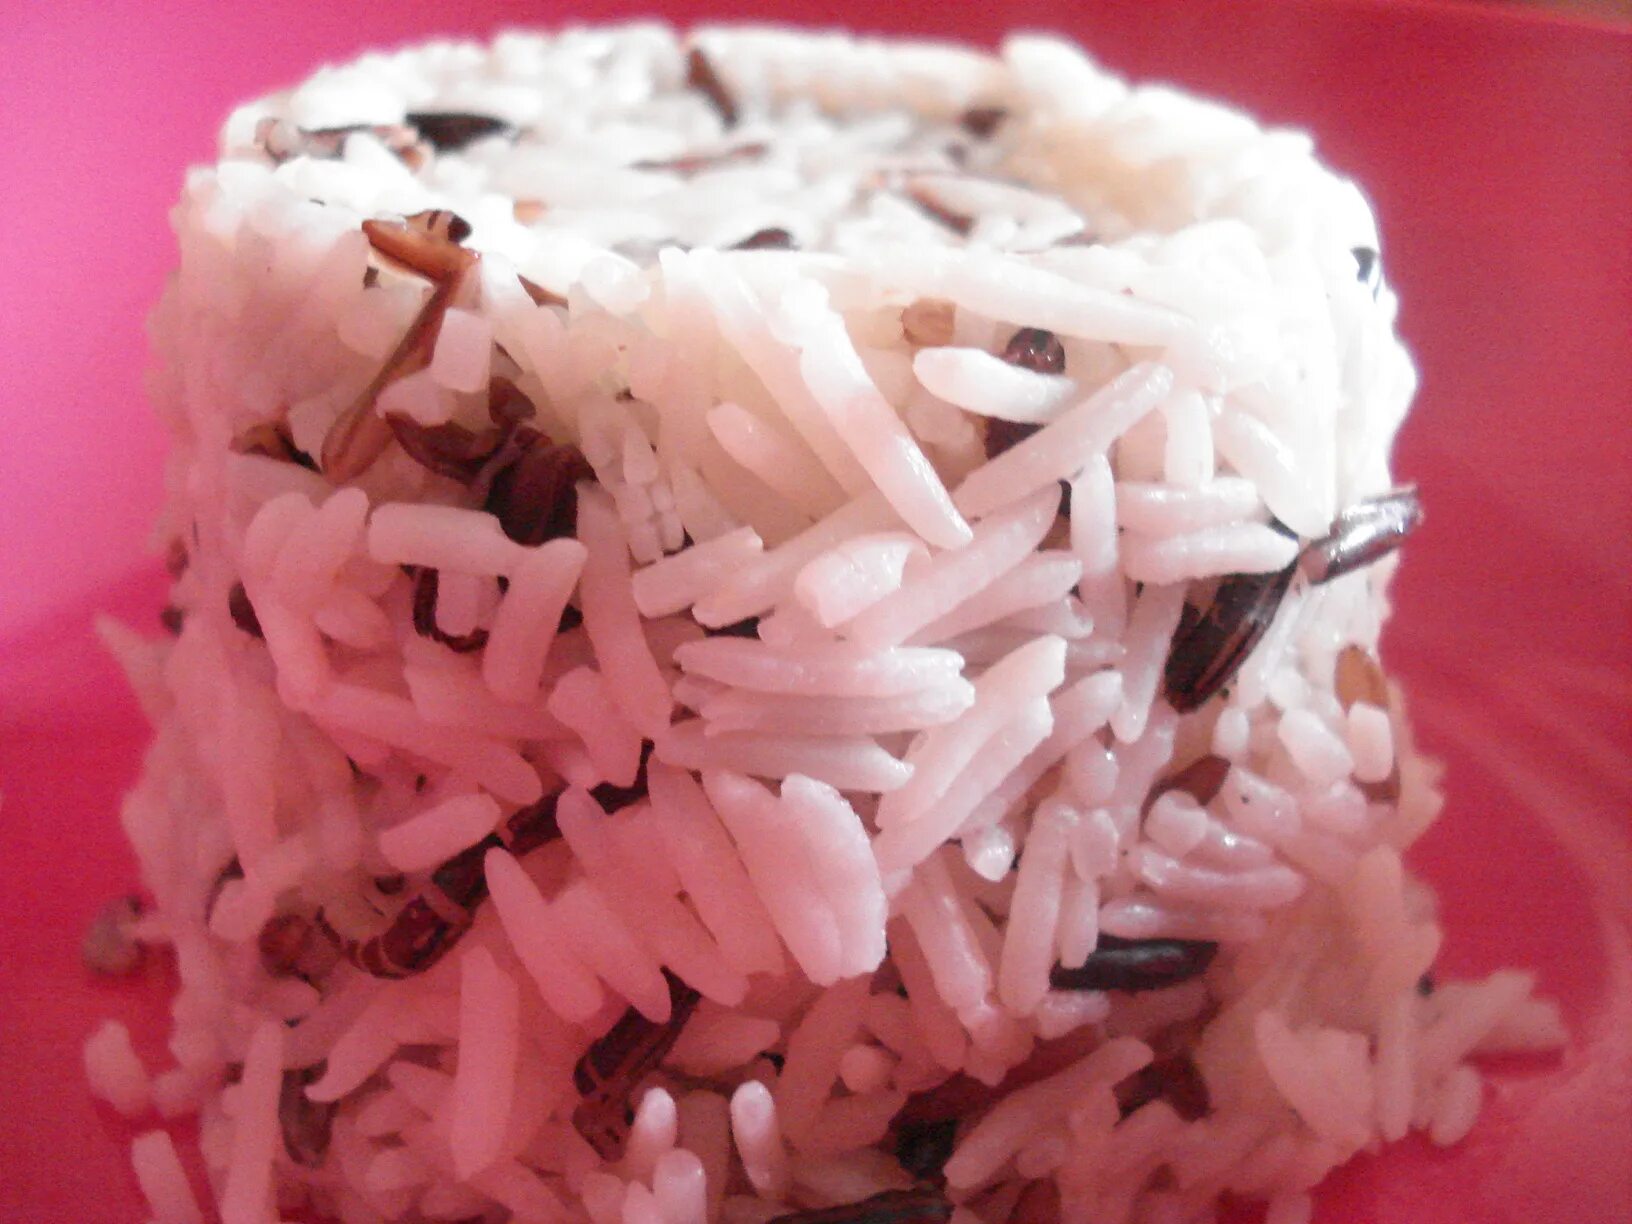 Many rice. Рис басмати похож на червяка.